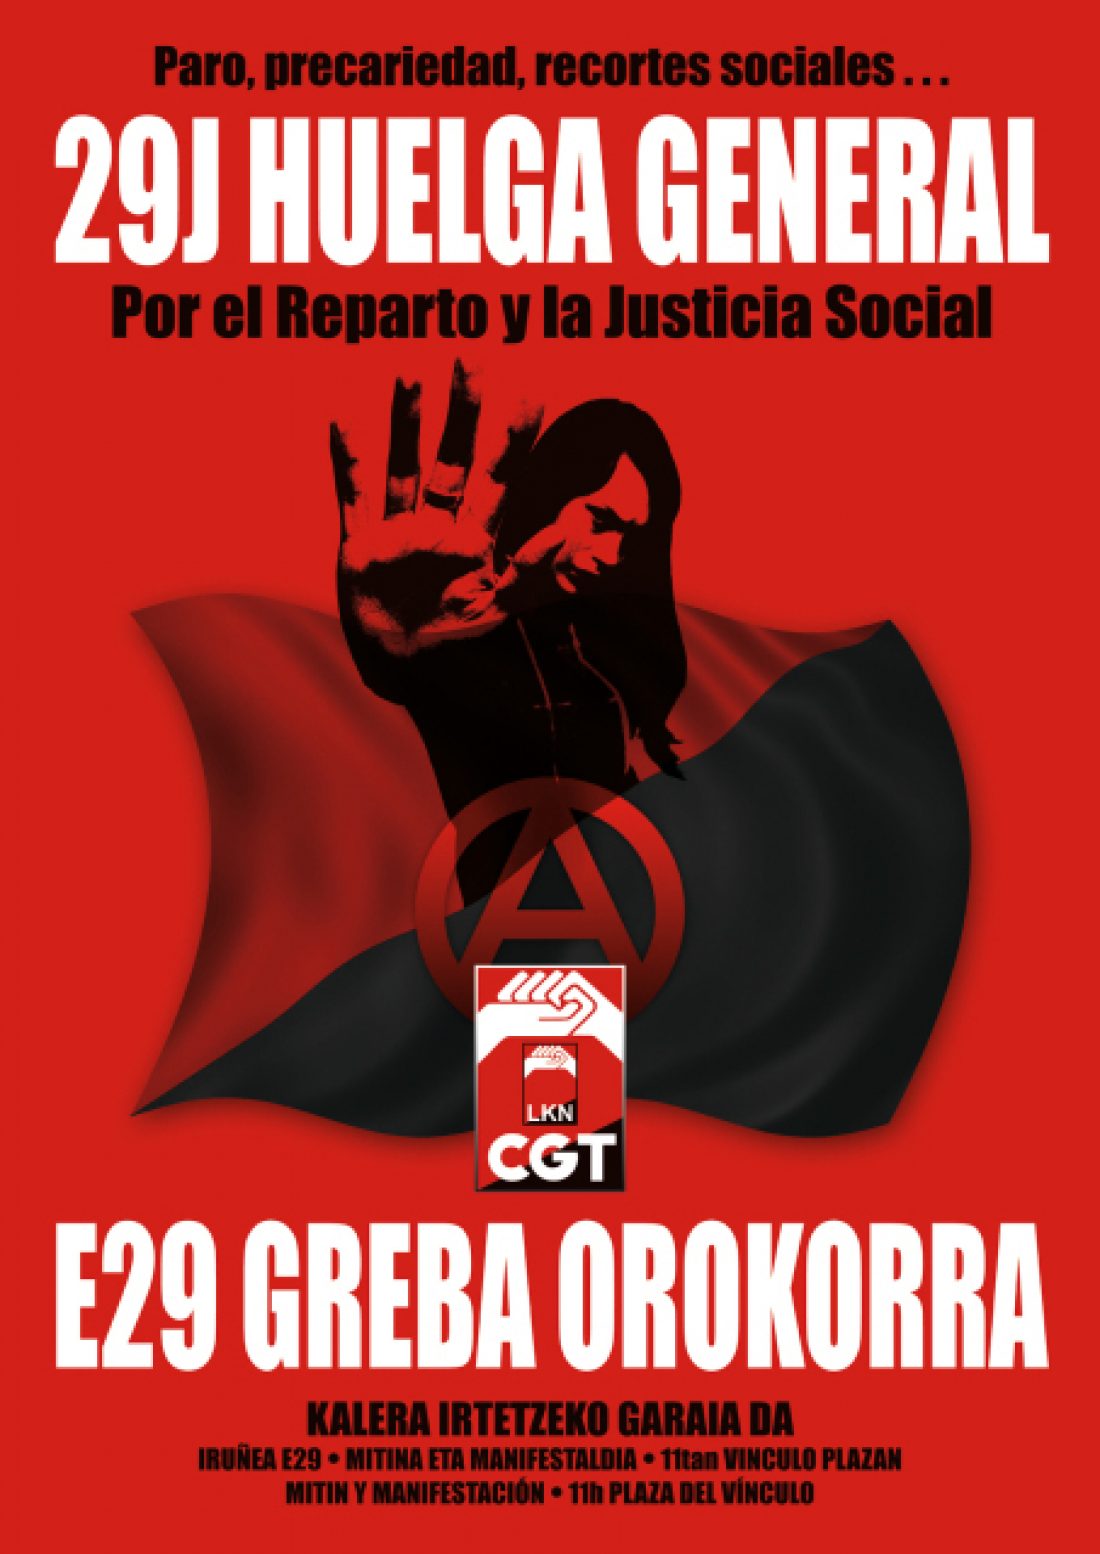 Euskal Herria : CGT-LKN convoca Huelga General el 29 de Junio. Ekainak 29, Greba Orokorra !